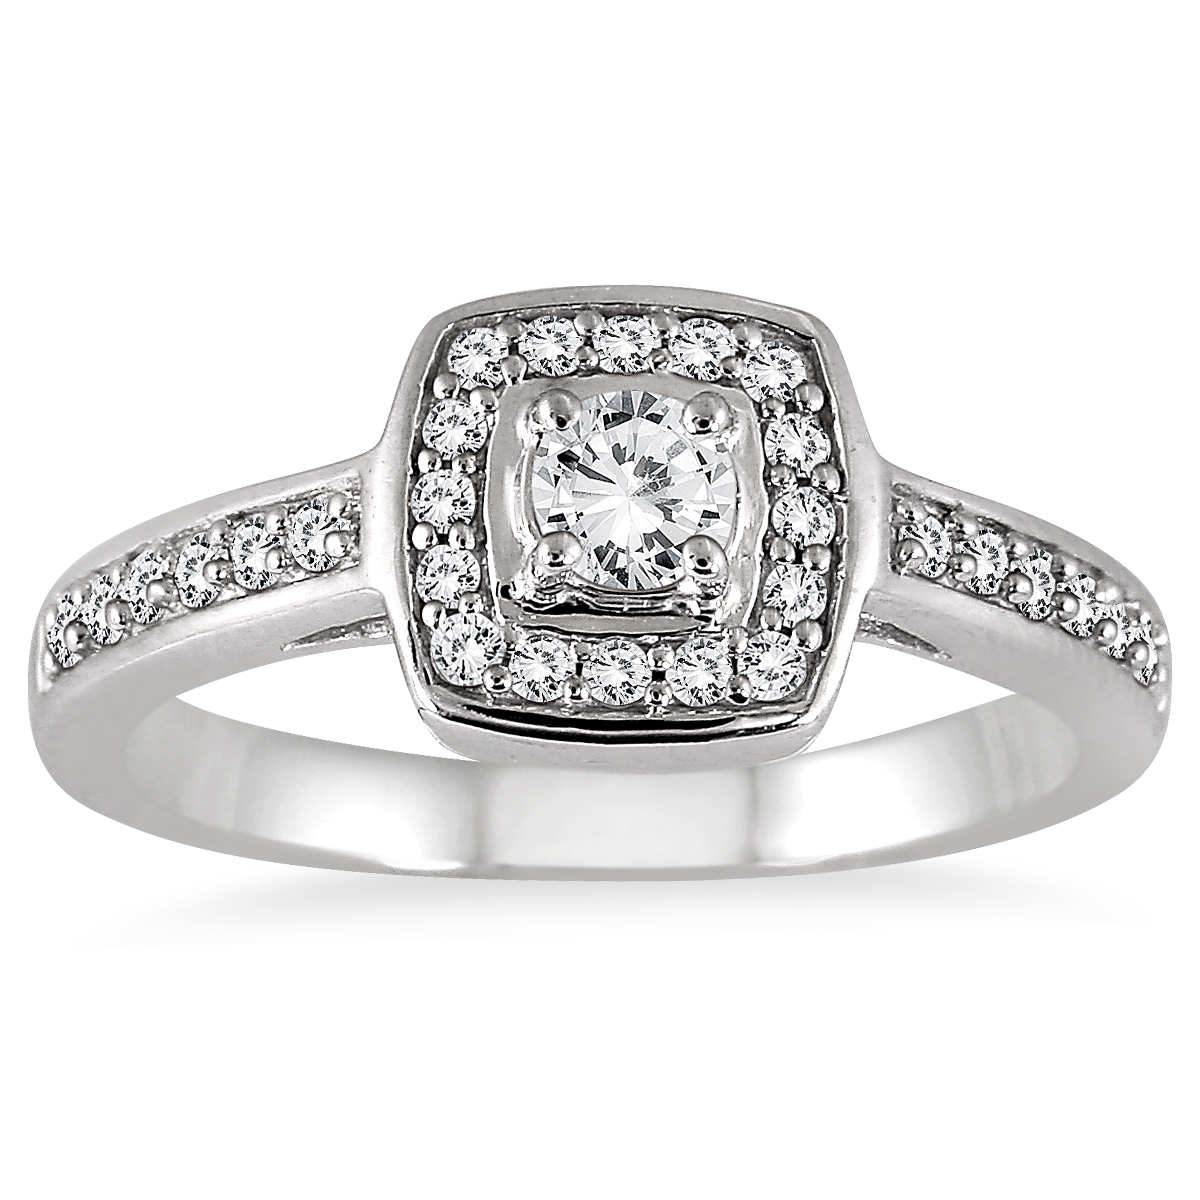 1/2 Carat TW Diamond Halo Ring in 10K White Gold